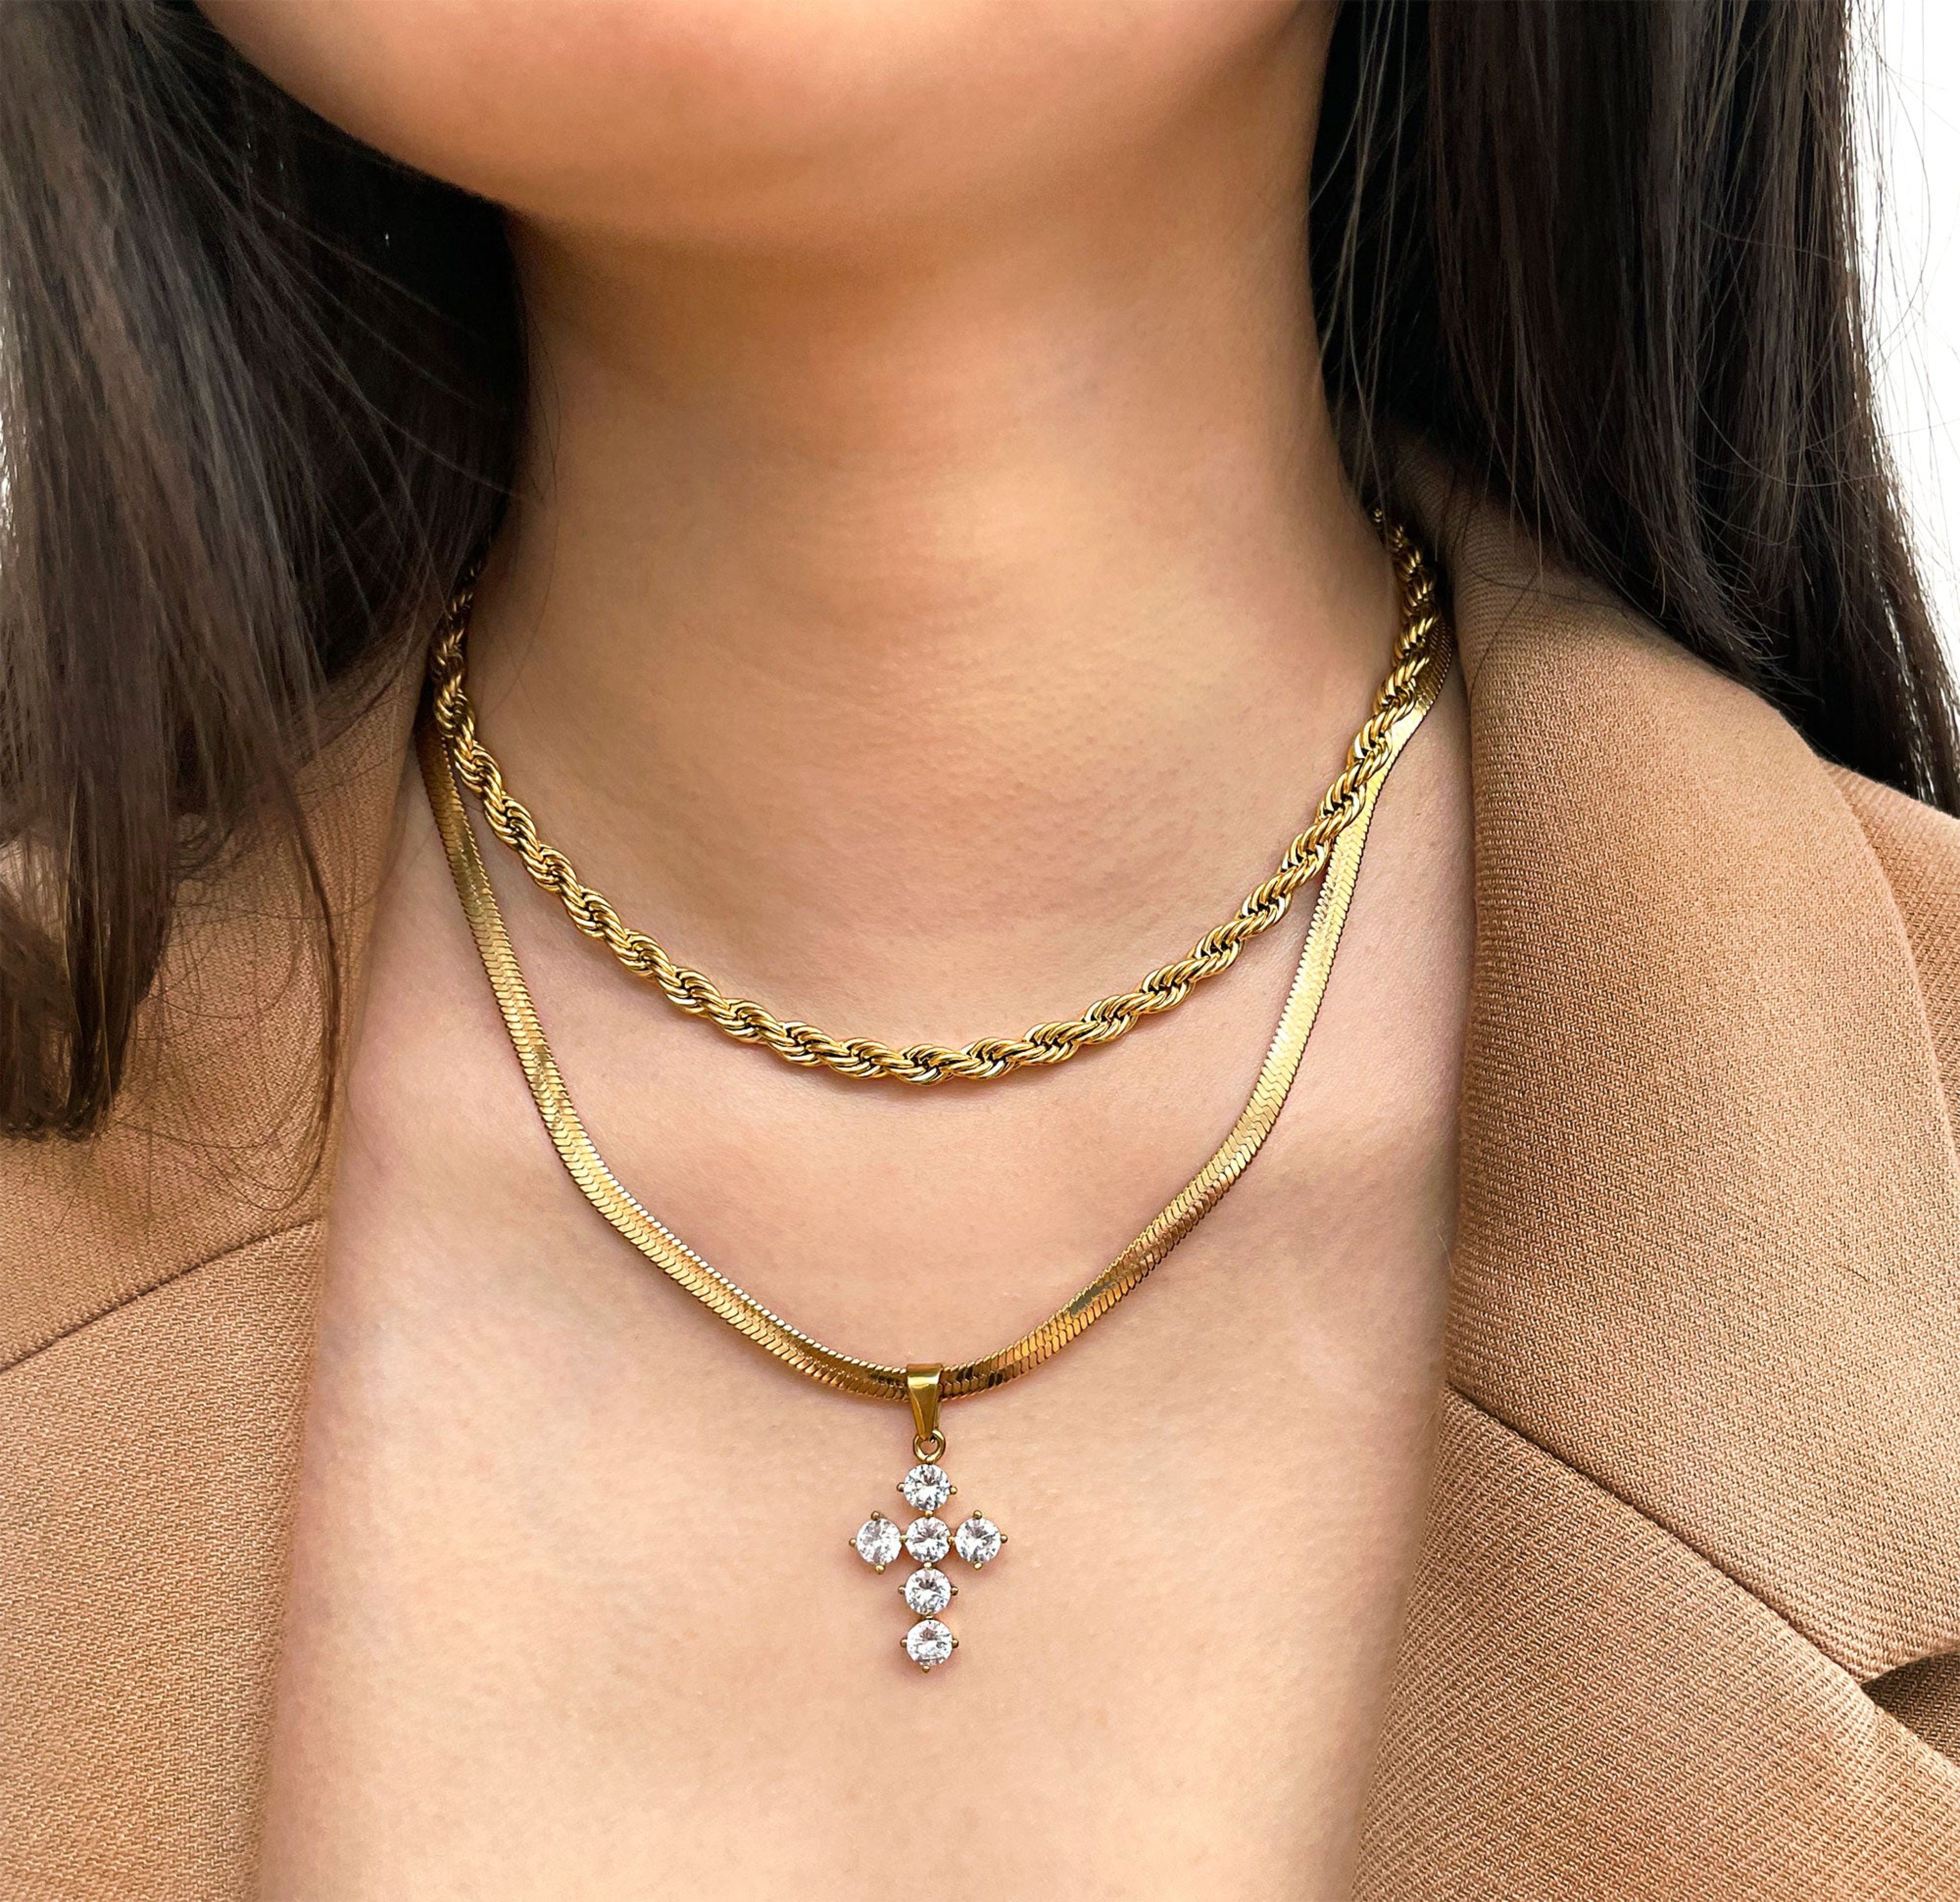 diamond cross necklace waterproof jewelry dolce